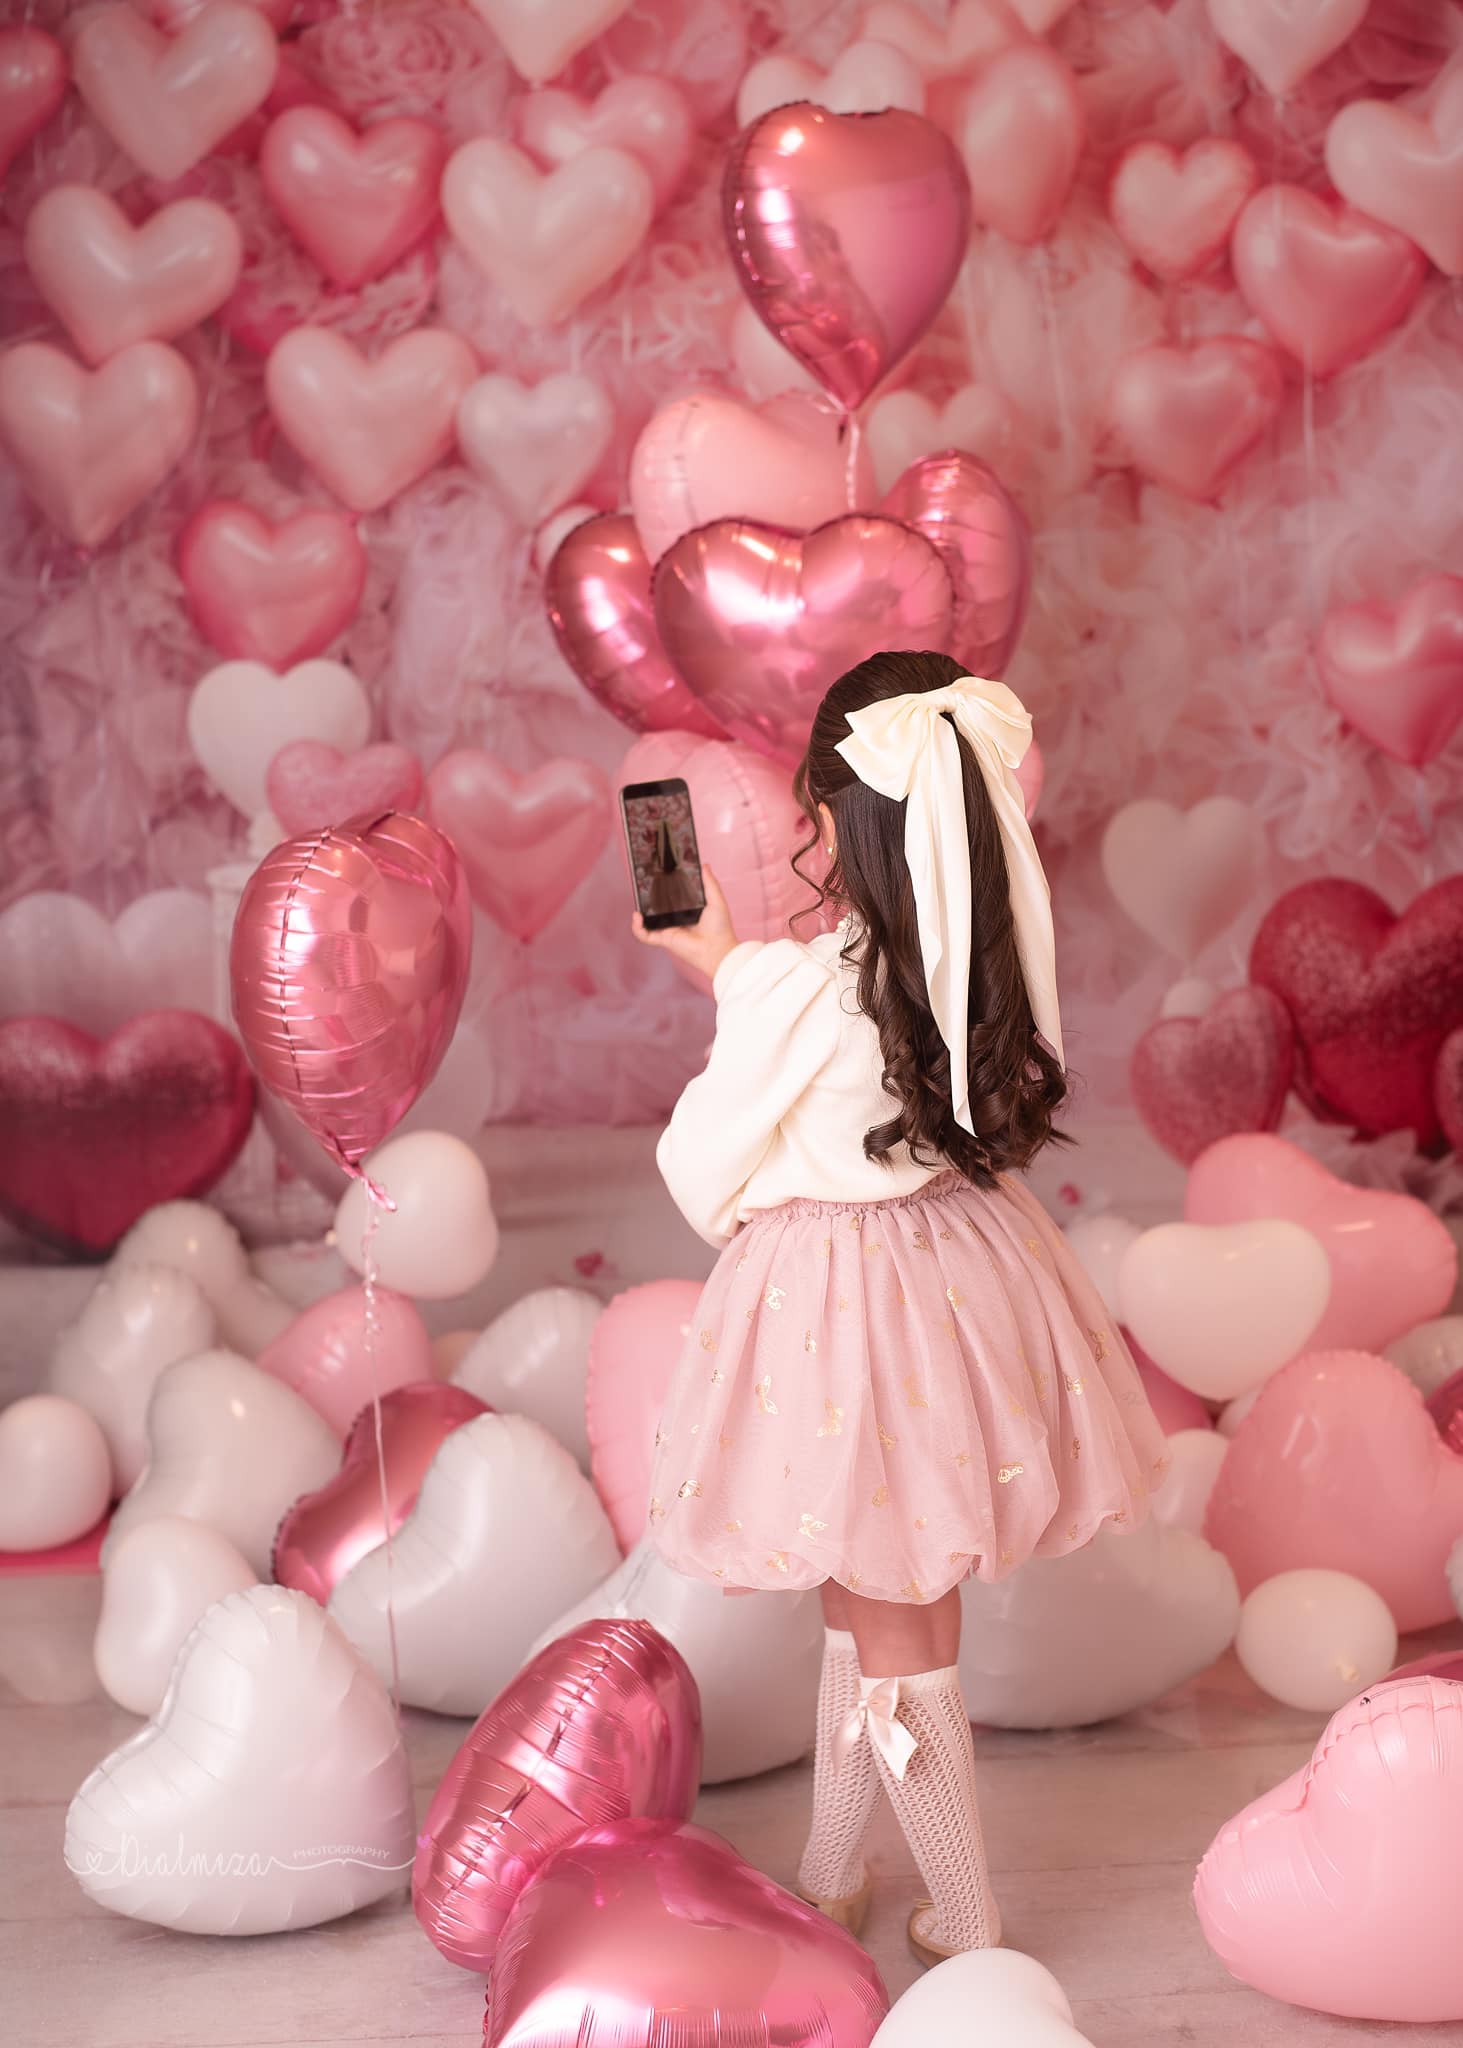 Kate Valentinstag Rosa Liebe Herz Ballon Romantische Raum Hintergrund von Emetselch